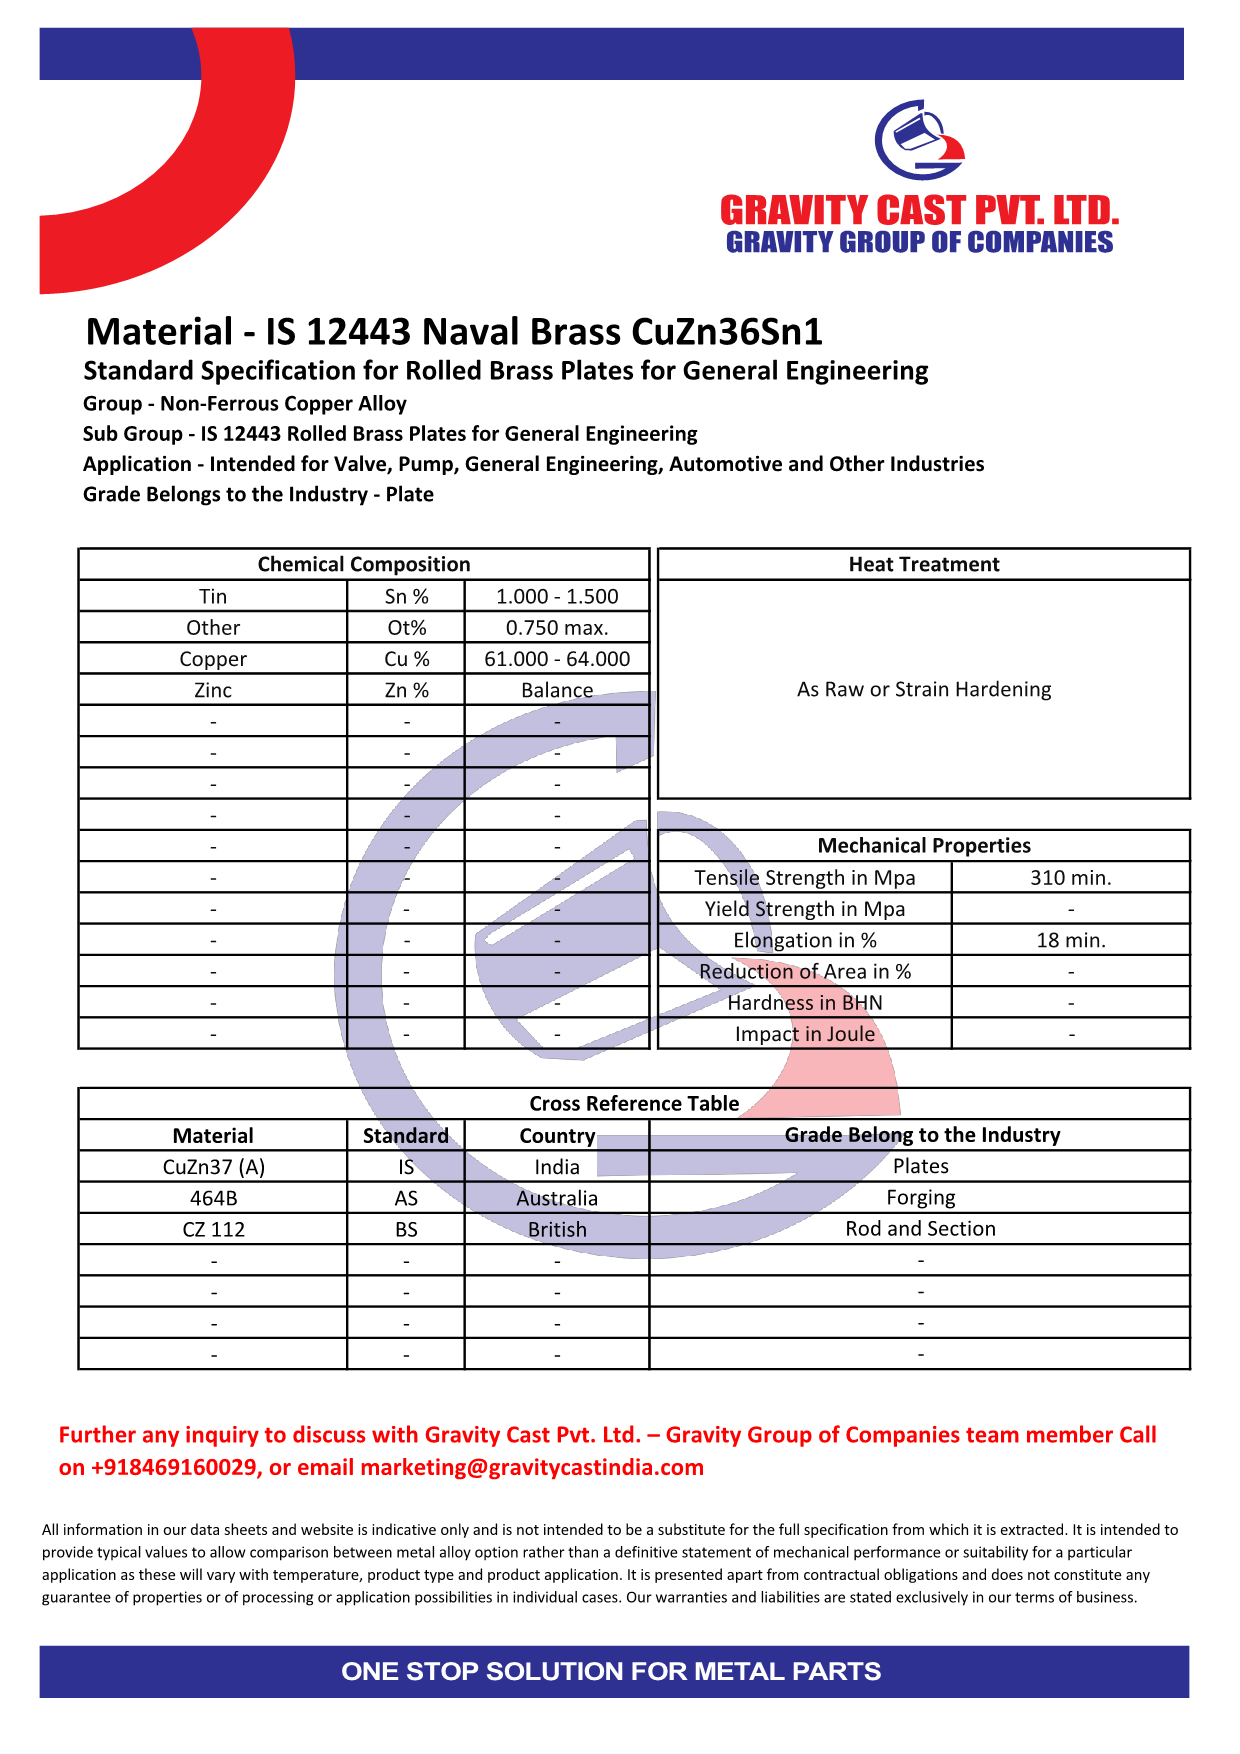 IS 12443 Naval Brass CuZn36Sn1.pdf